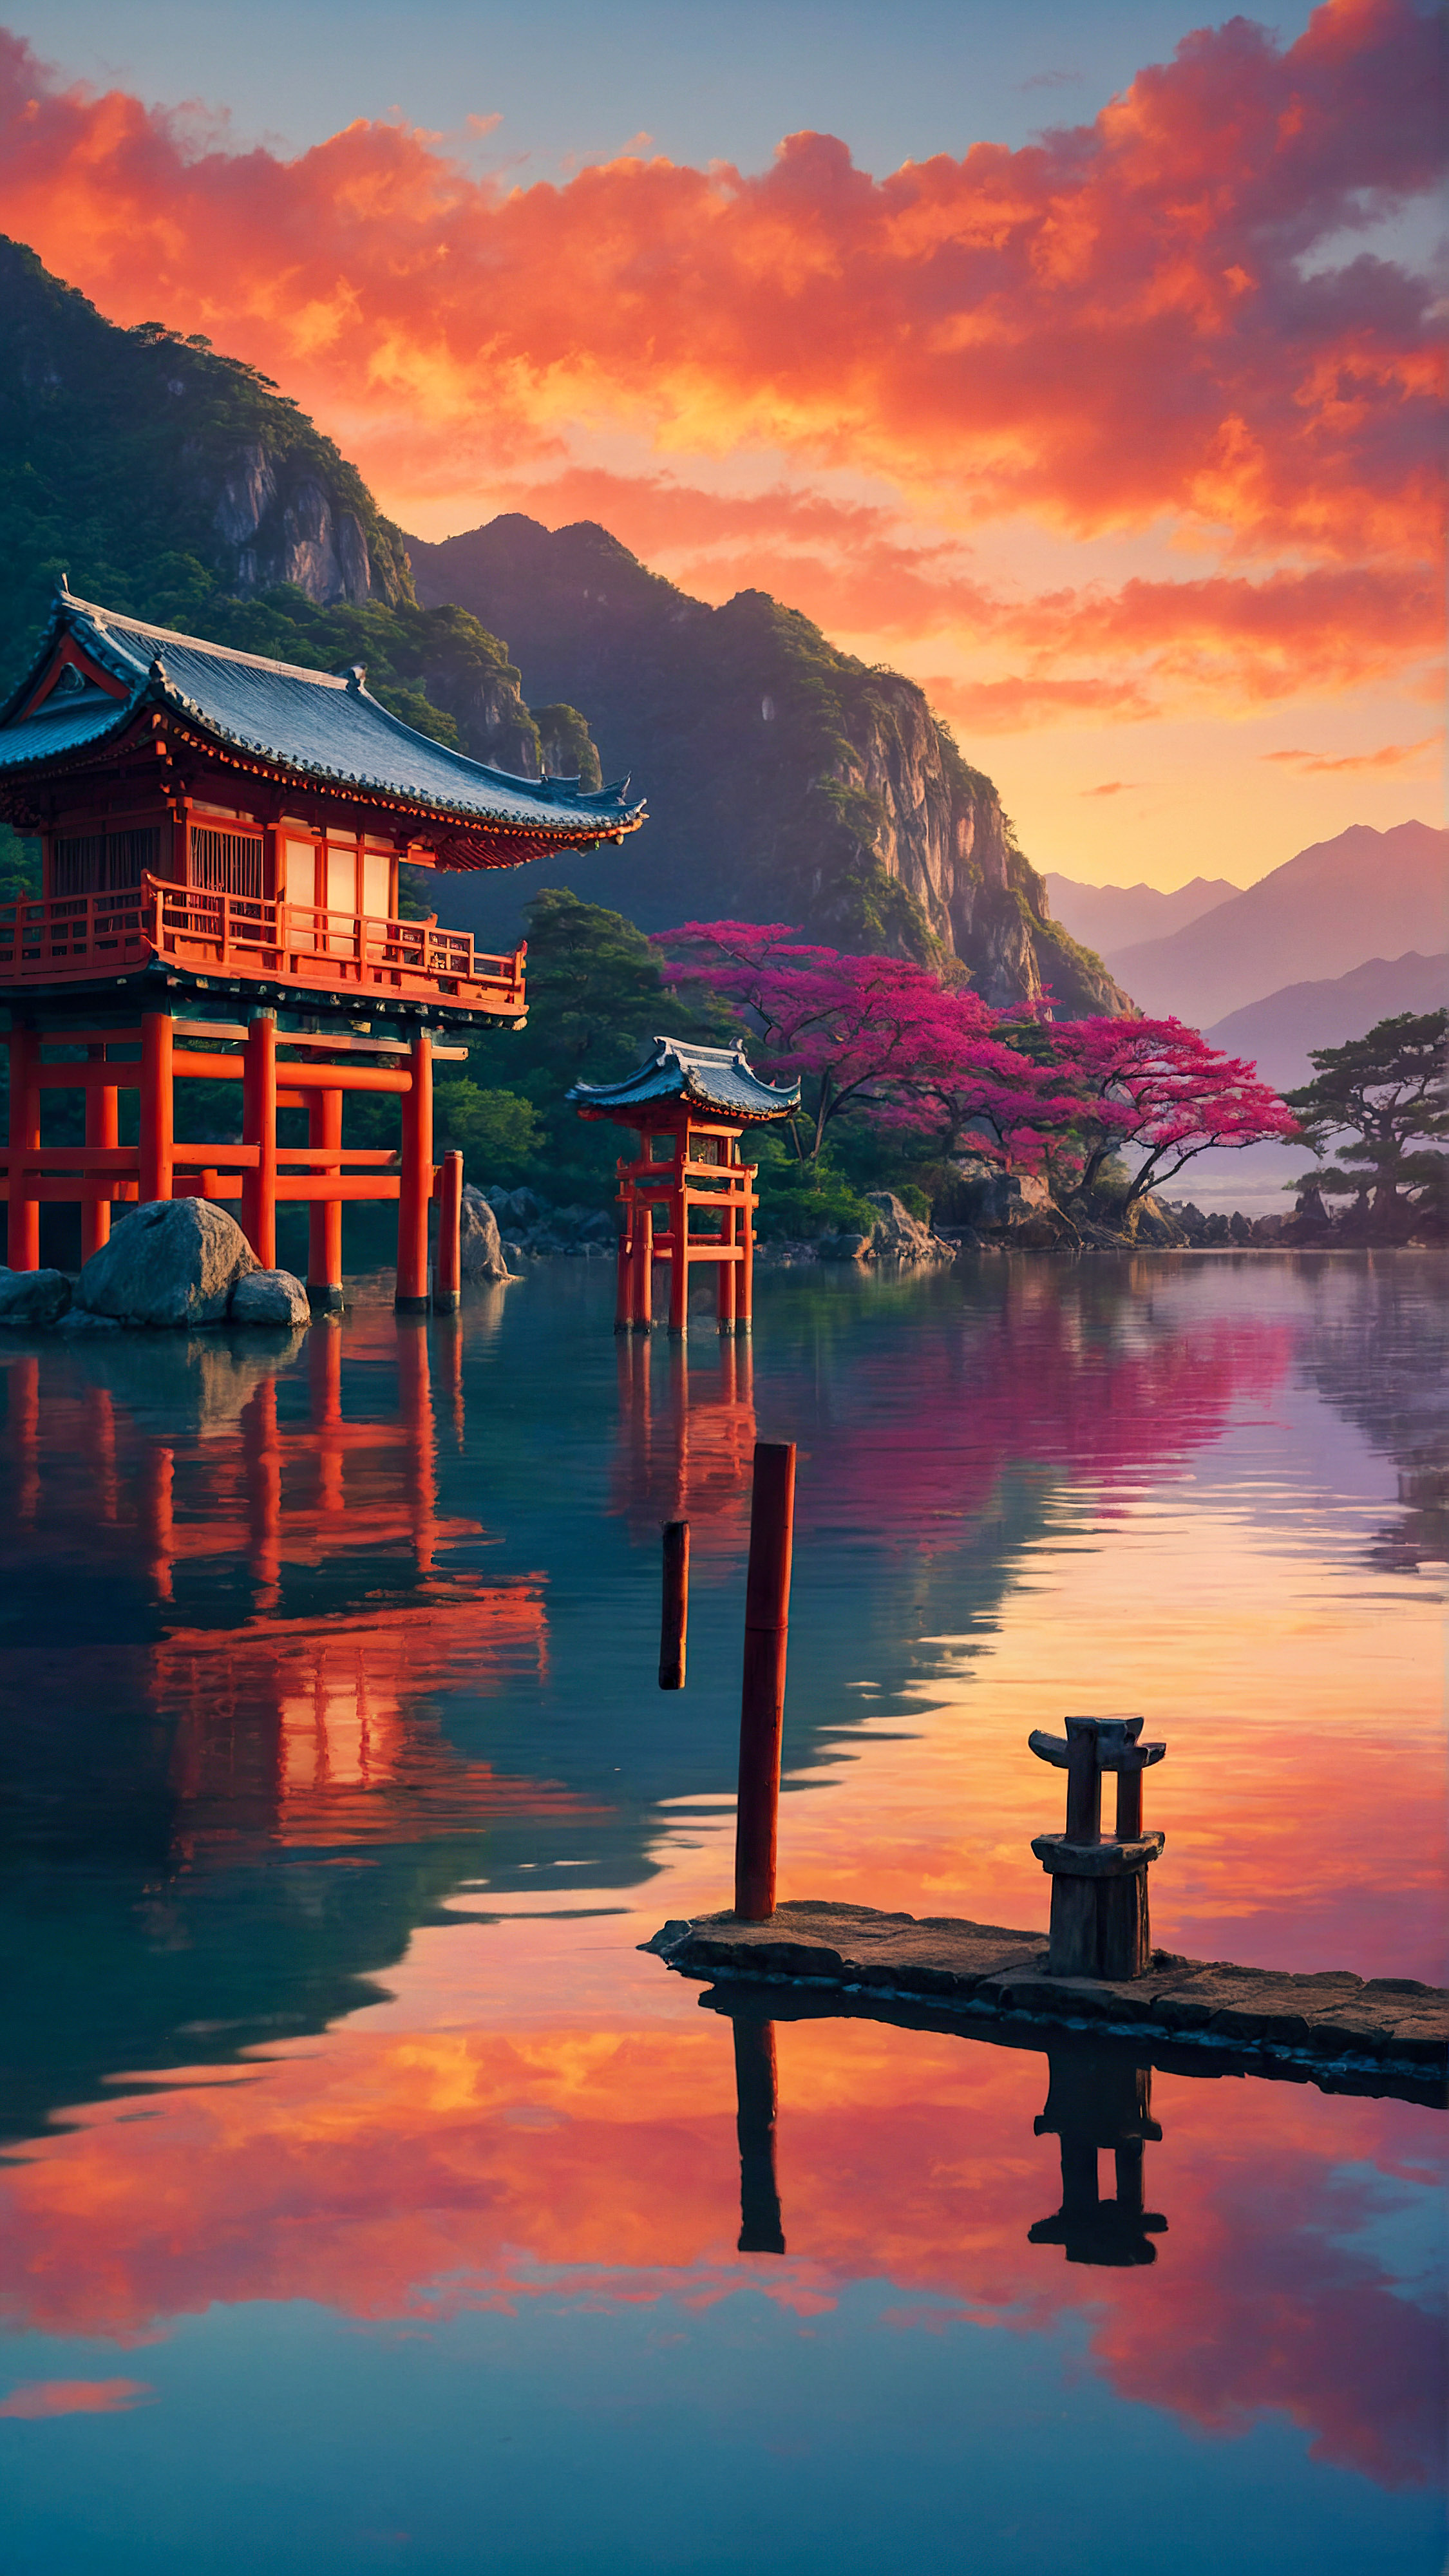 Transformez l'écran de votre appareil avec notre arrière-plan pour iPhone, une illustration vibrante et colorée d'un paysage asiatique serein et mystique au coucher du soleil, présentant des montagnes, un bâtiment traditionnel et une porte torii reflétée dans les eaux calmes en dessous, vous emmenant dans un voyage visuel vers l'Est. 